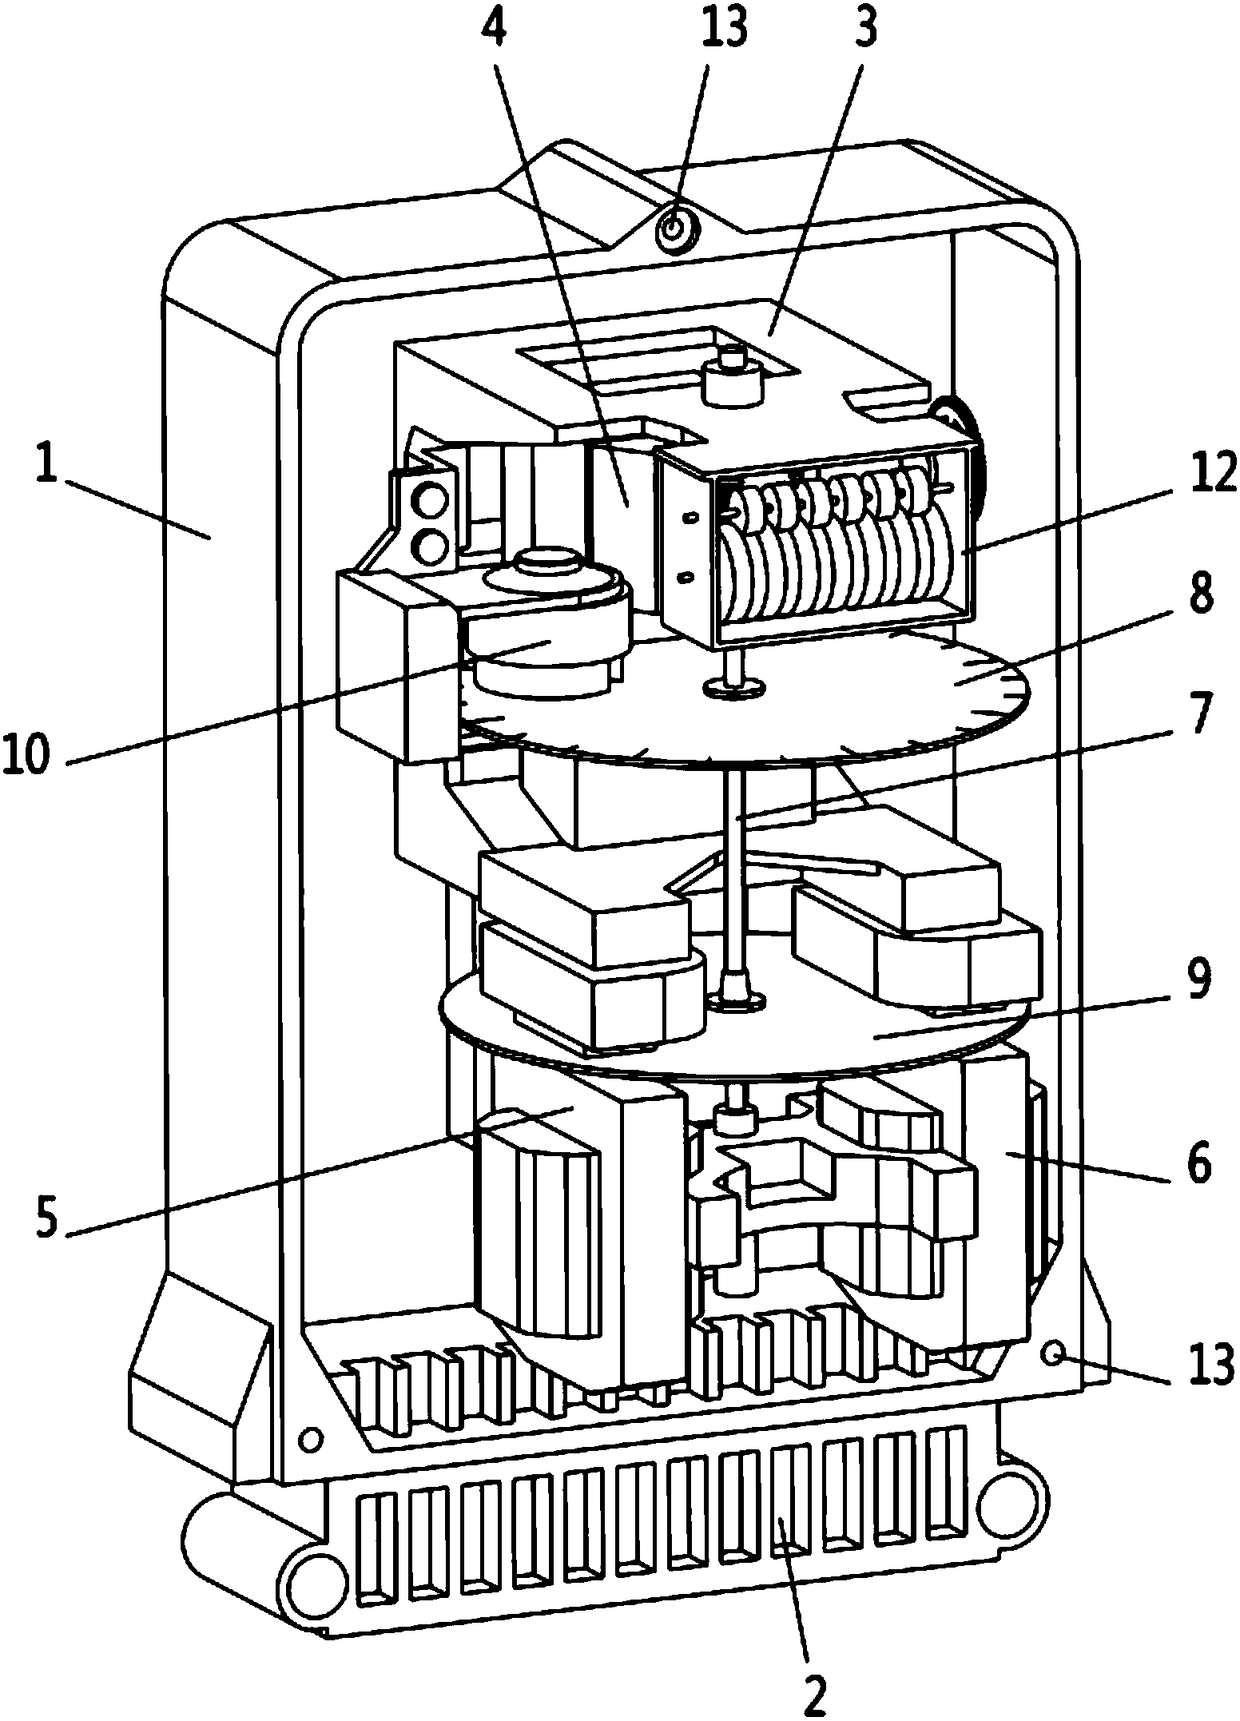 Novel mechanical ammeter